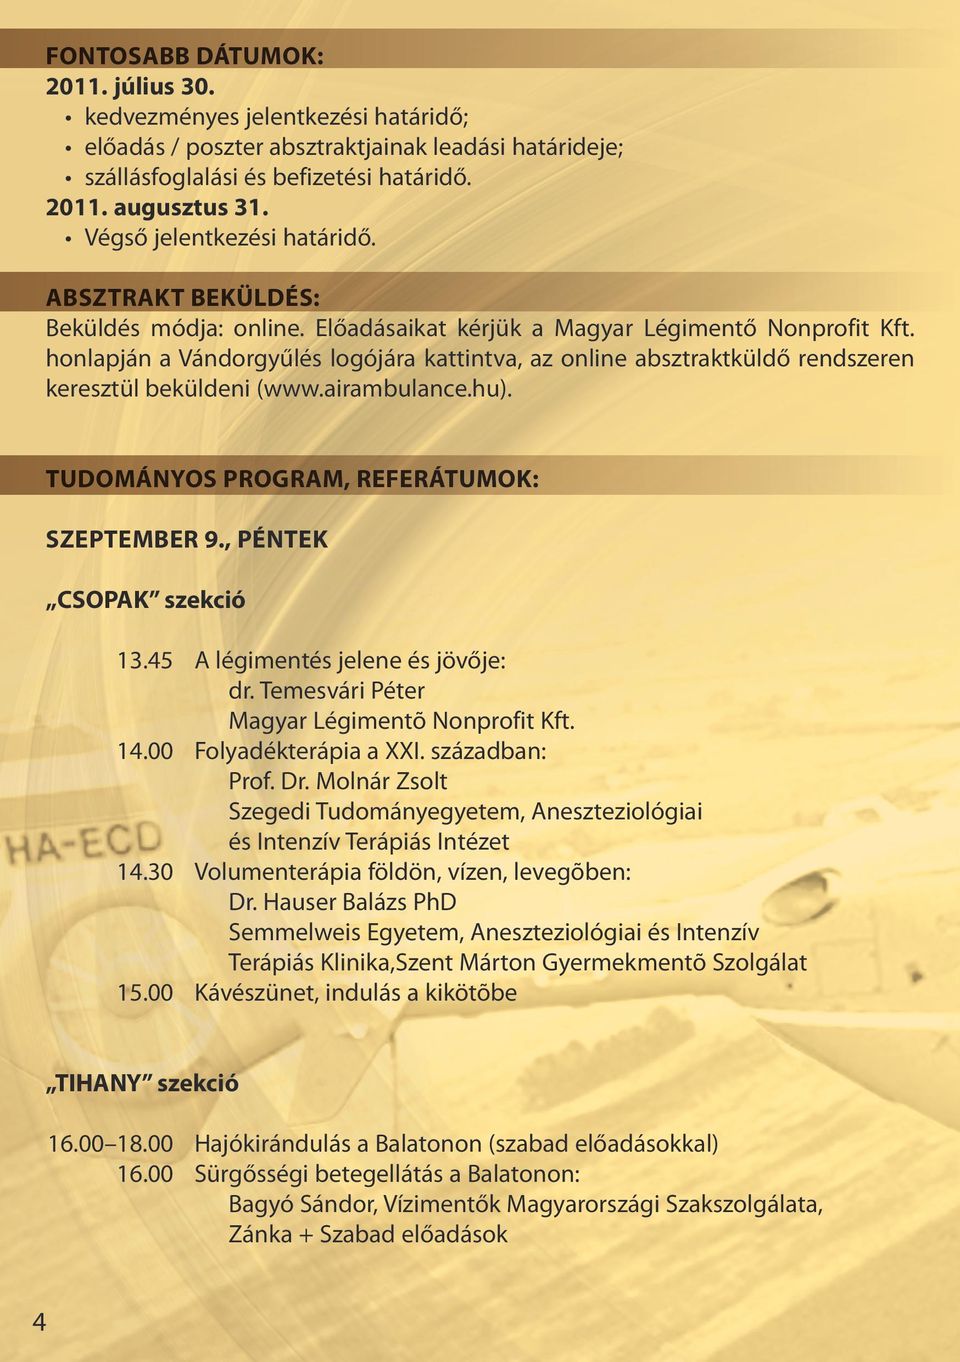 honlapján a Vándorgyűlés logójára kattintva, az online absztraktküldő rendszeren keresztül beküldeni (www.airambulance.hu). Tudományos program, referátumok: Szeptember 9., péntek CSOPAK szekció 13.